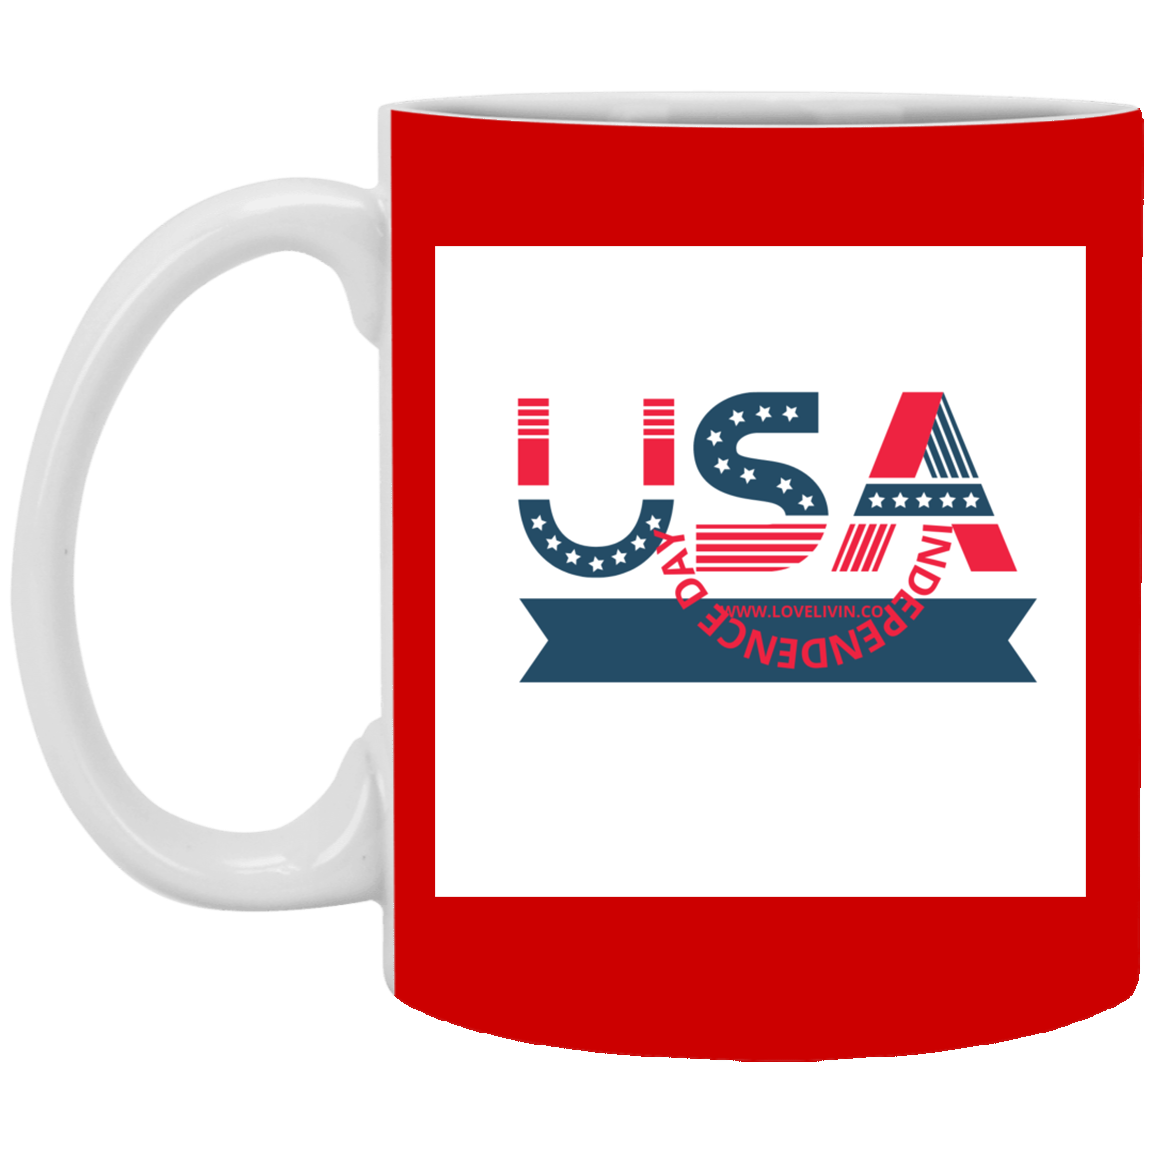 USA Independence Day mug-hats USA- 11 oz. White Mug